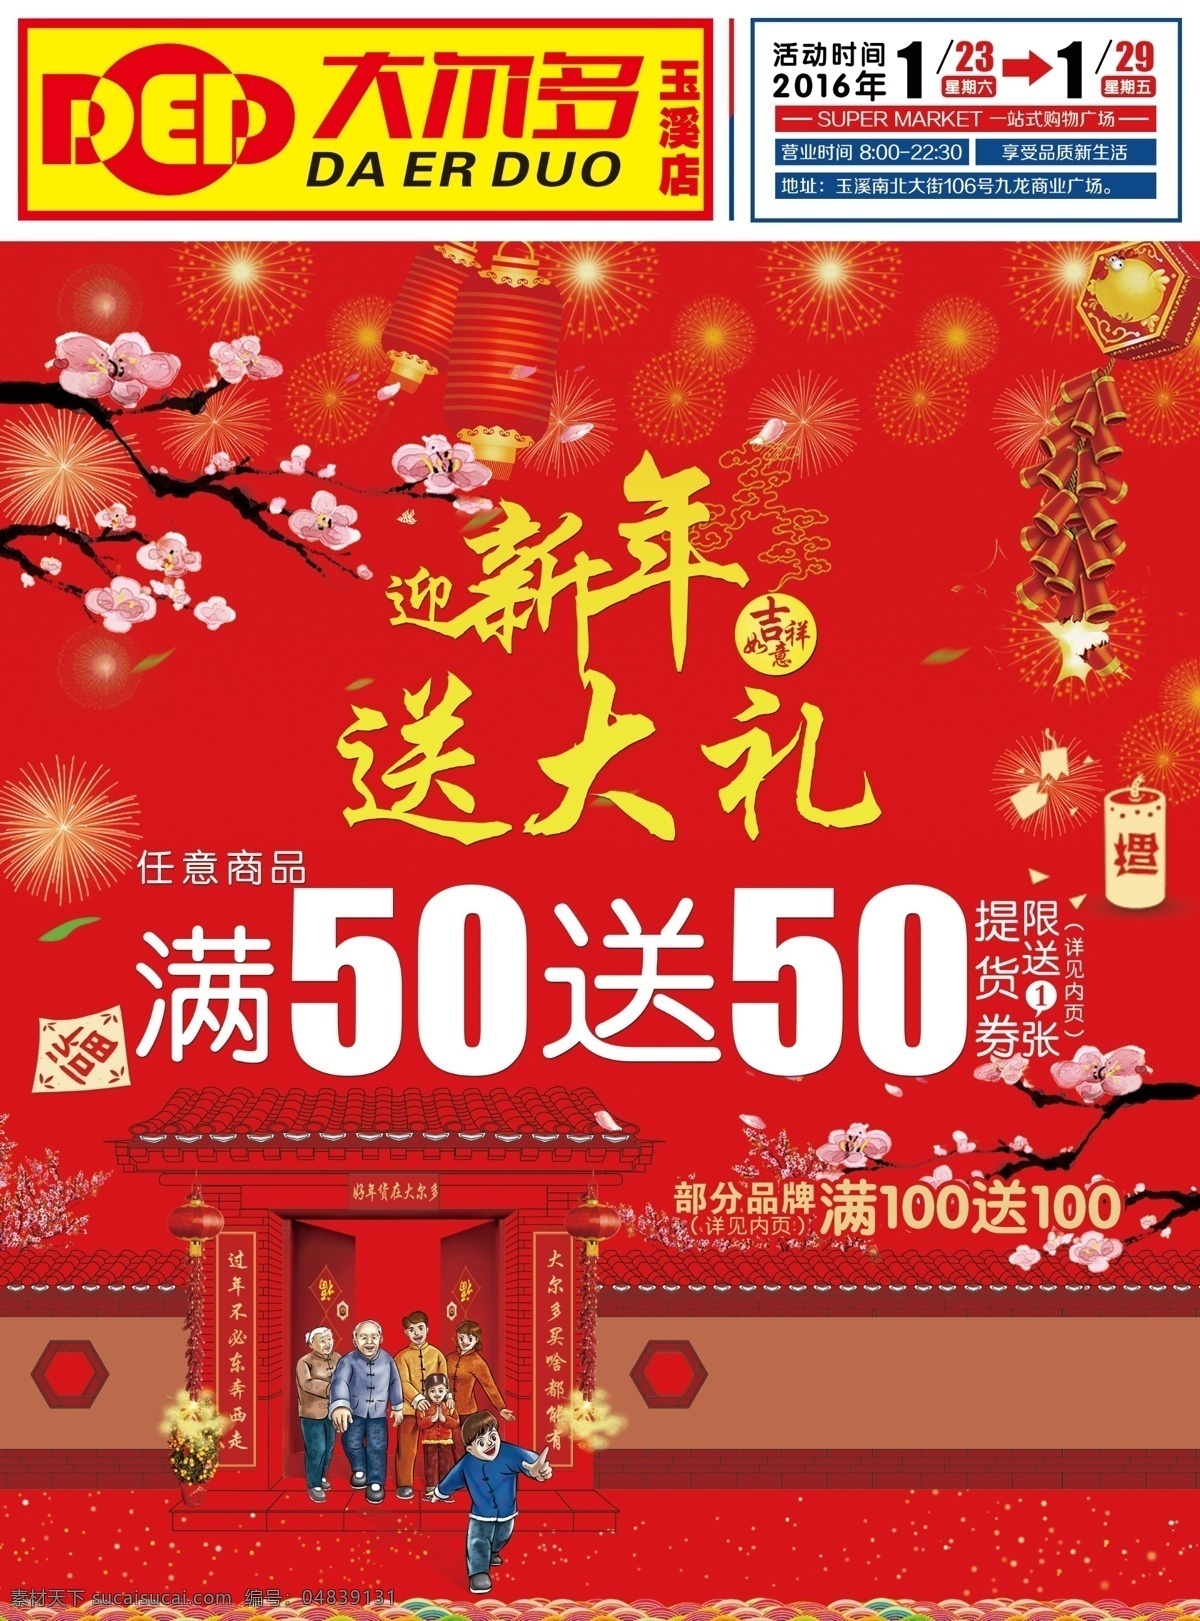 春节 特惠 宣传单 安哲南明 化妆品 新年 红色 喜庆 a4 封面 杂志 dm宣传单